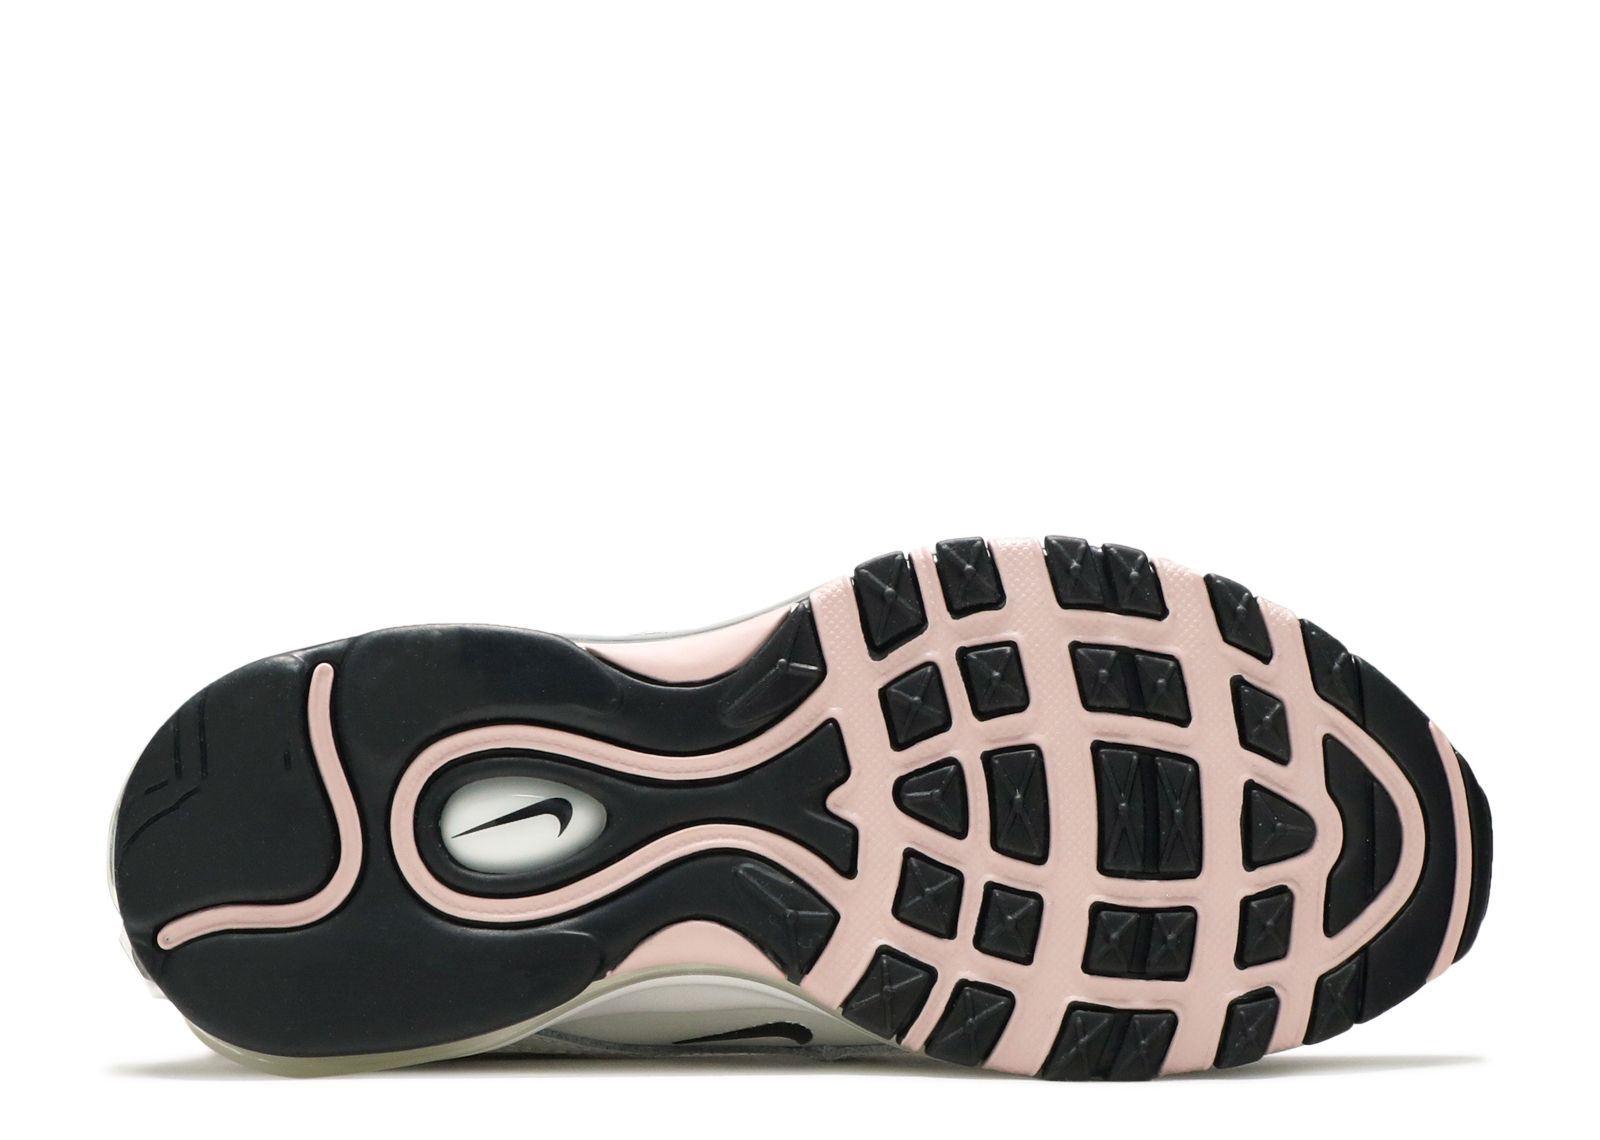 Wmns Air Max 97 'Pink Cream' - Nike - DA9325 100 - summit white